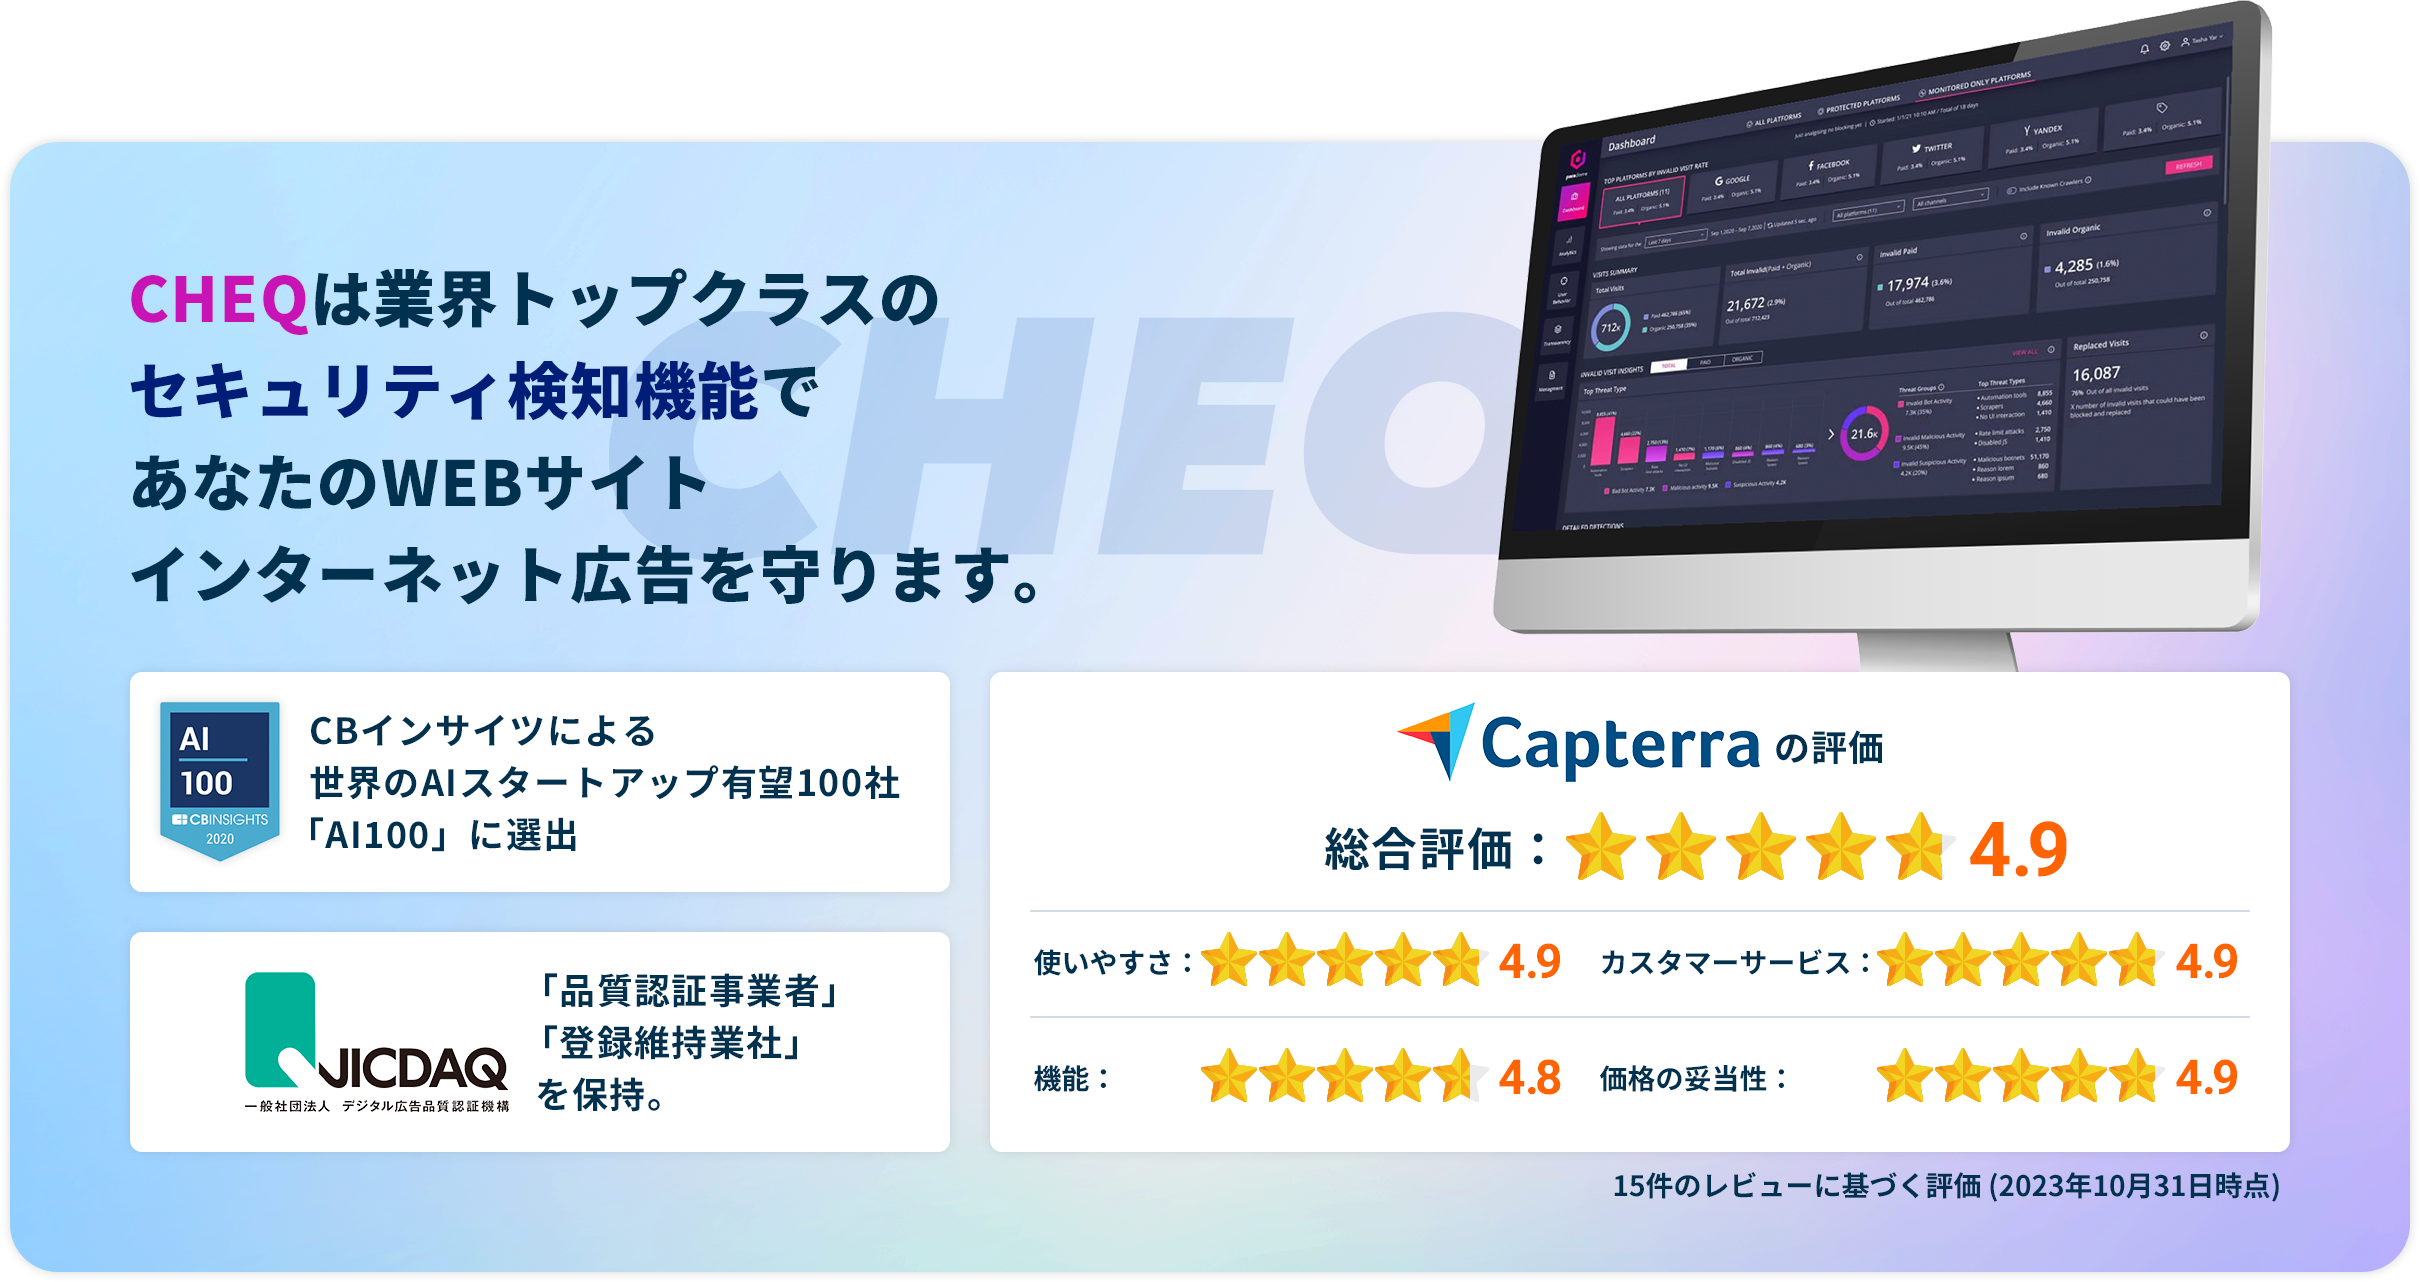 CHEQは業界トップクラスのセキュリティ検知機能であなたのWEBサイトインターネット広告を守ります。 CBインサイツによる世界のAIスタートアップ有望100社「AI100」に選出 「品質認証事業者」「登録維持業社」を保持。Capterraの評価